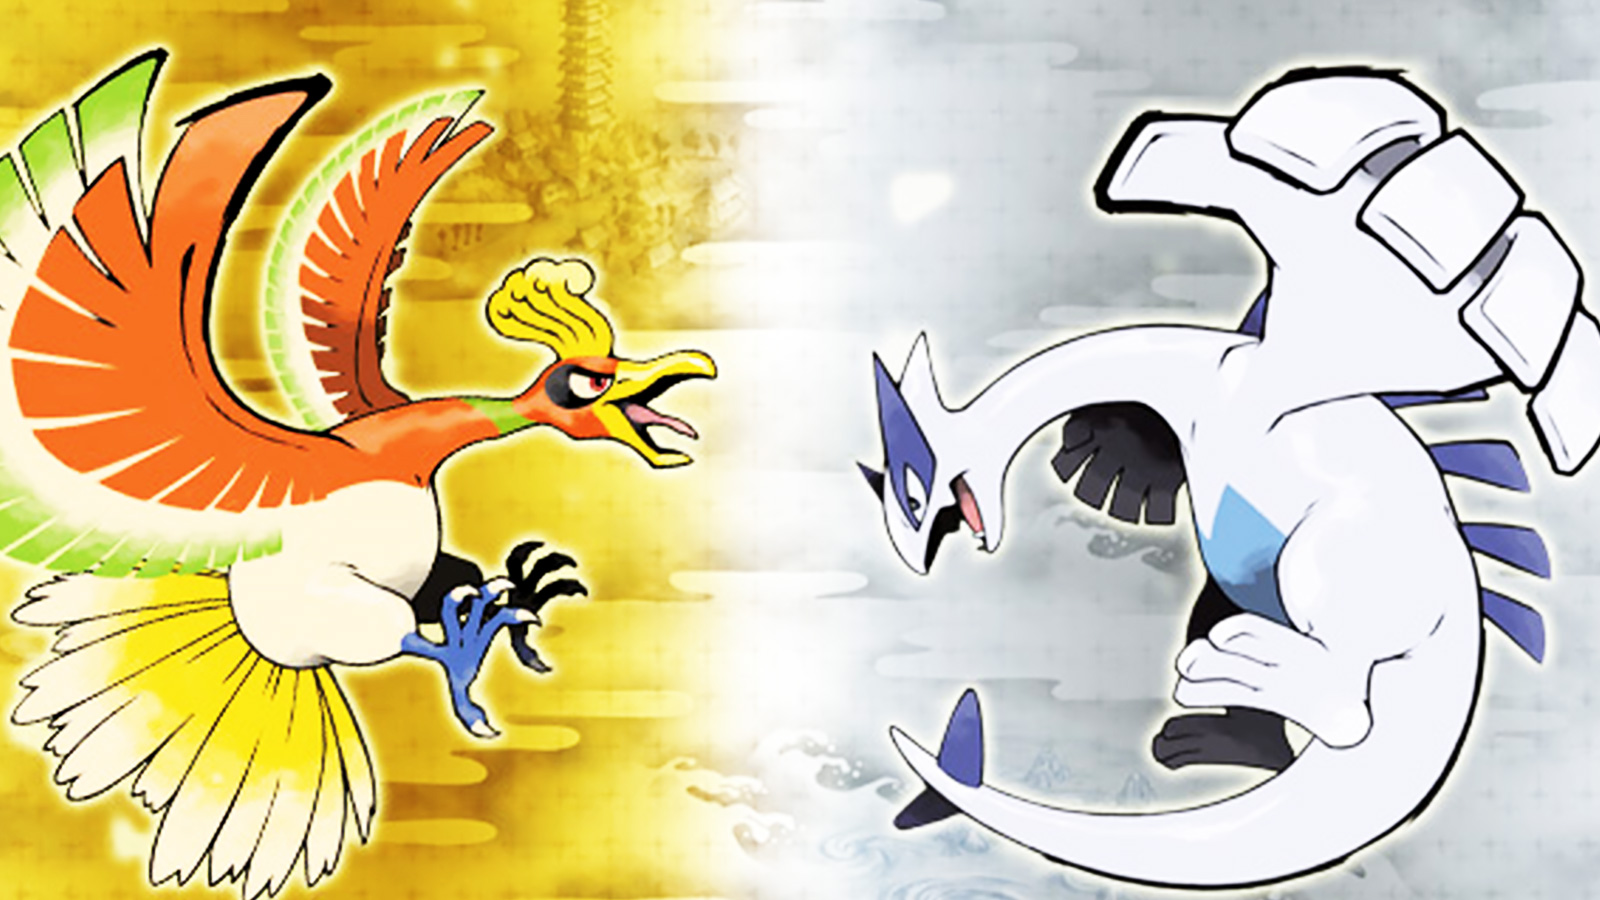 HD wallpaper: Pokemon character wallpaper, Pokémon, Lugia, Soulsilver,  water